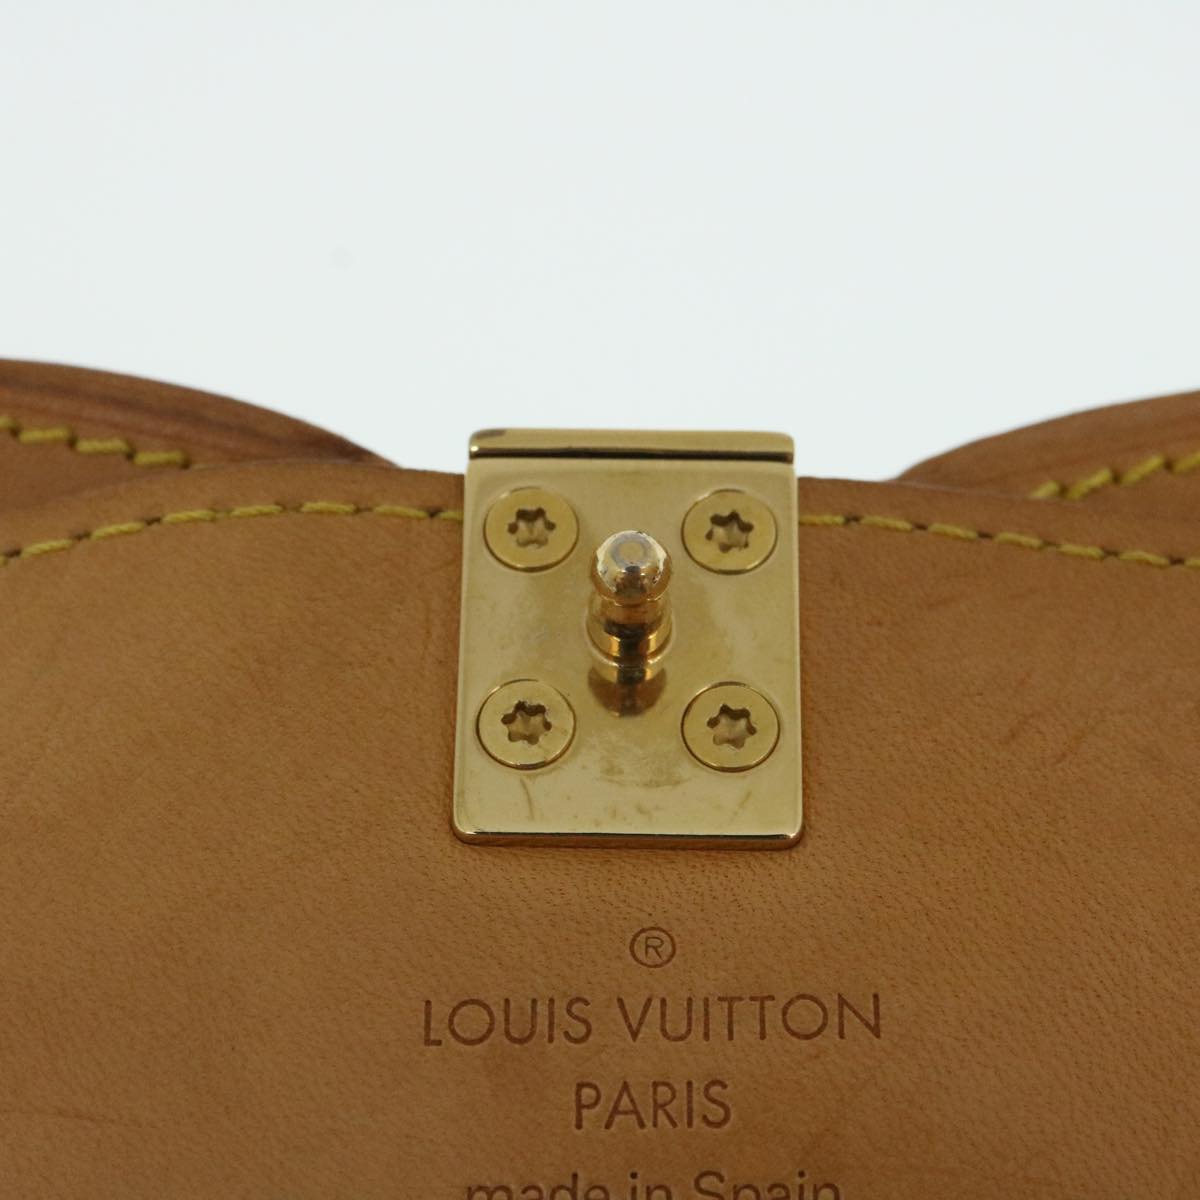 Louis Vuitton is back – 2:48AM